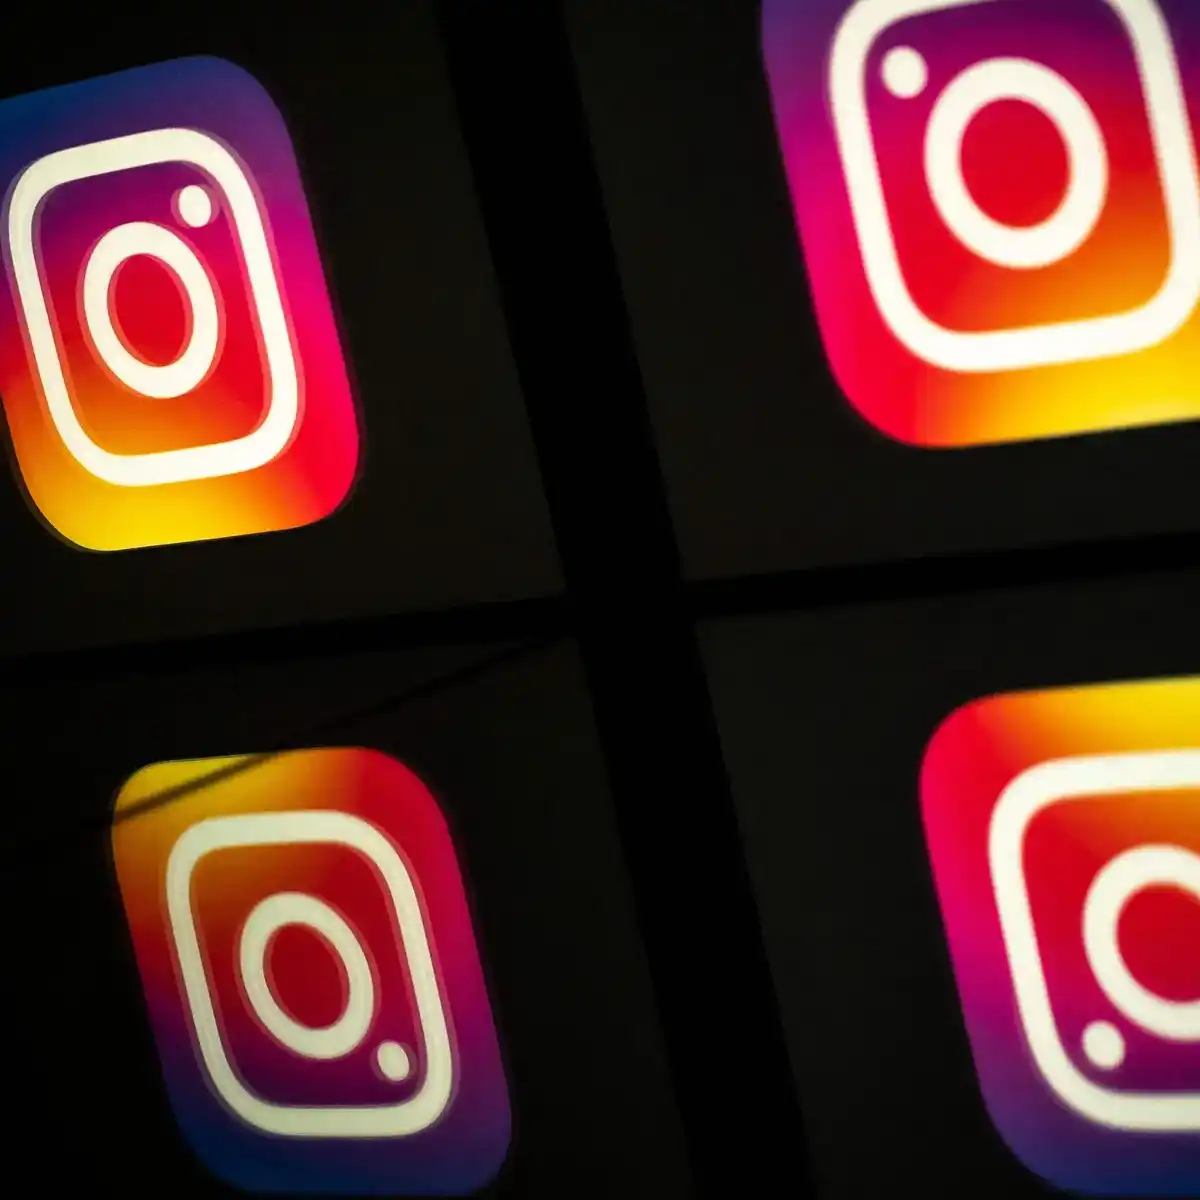 Instagram Silinen Fotoğrafları Geri Getirme: Etkili Yöntemler ve İpuçları  